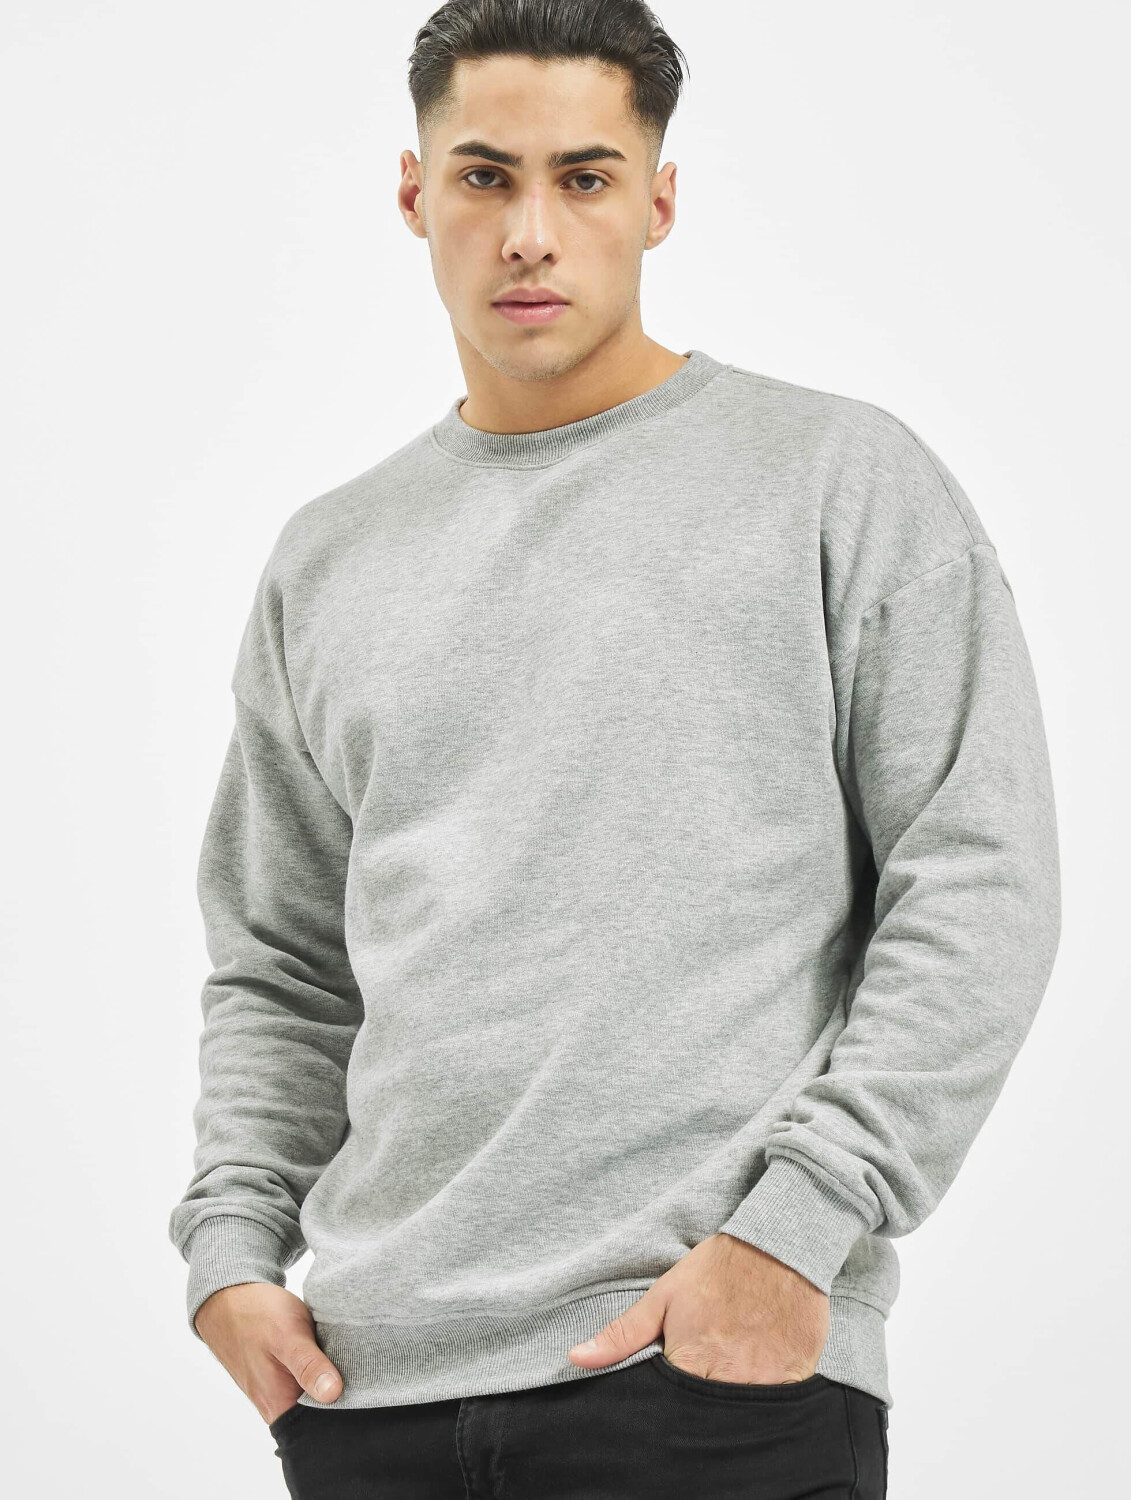 Urban Classics Sweatshirt grey Camden ab Preisvergleich bei | (TB1591GRY) € 22,99